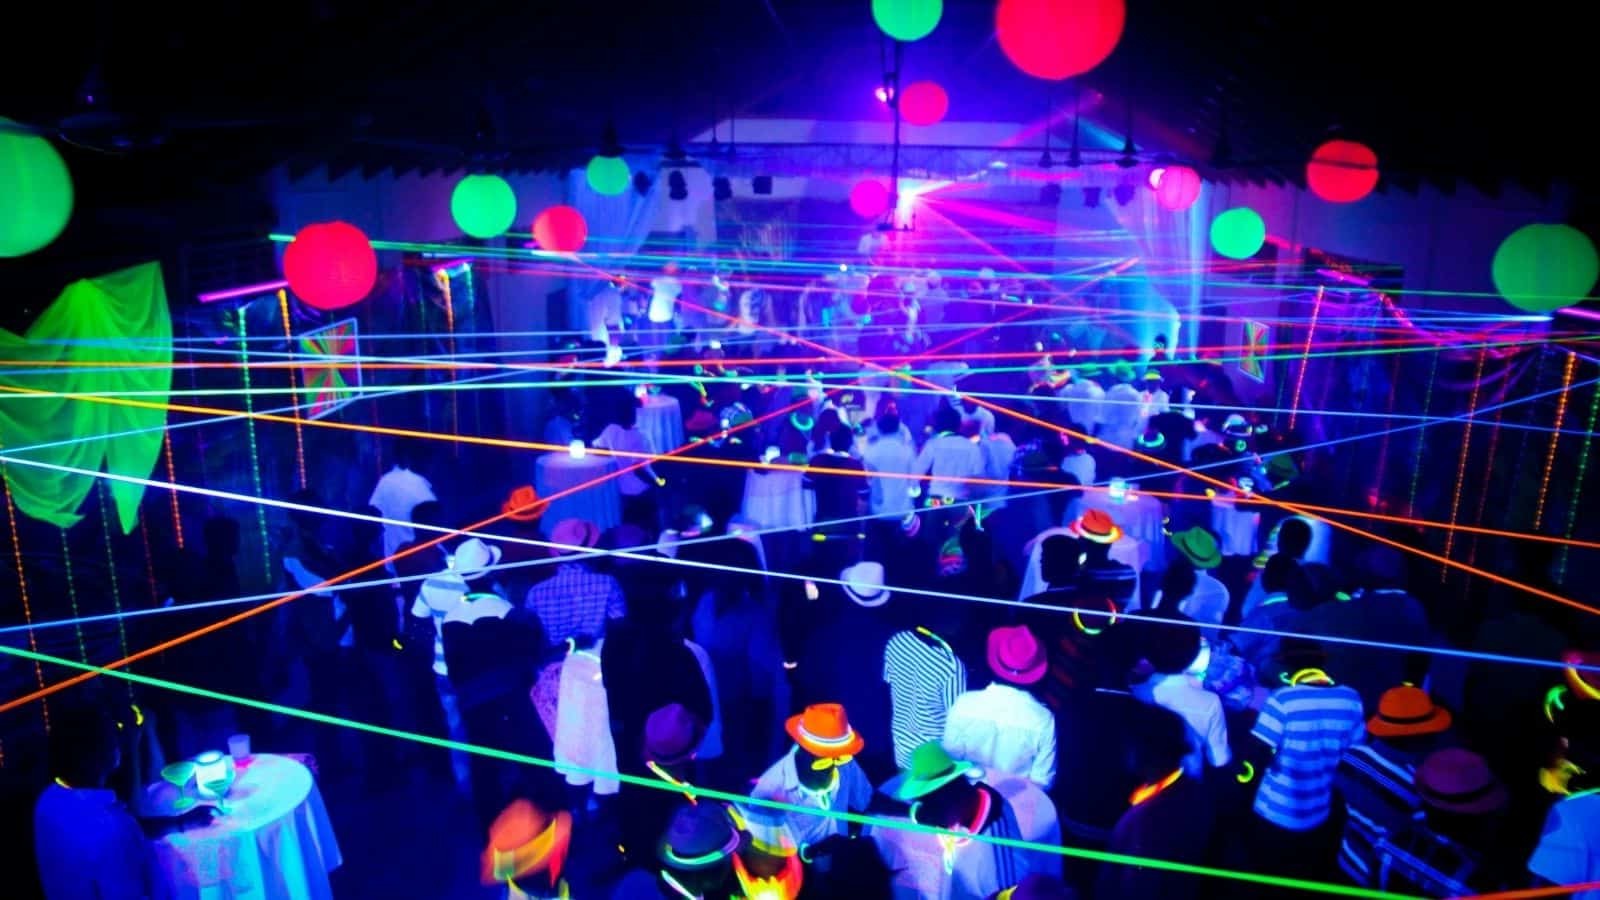 Schwarzlicht Party Deko Ideen: Beeindrucken Sie Ihre Gäste mit einer Neon Party!